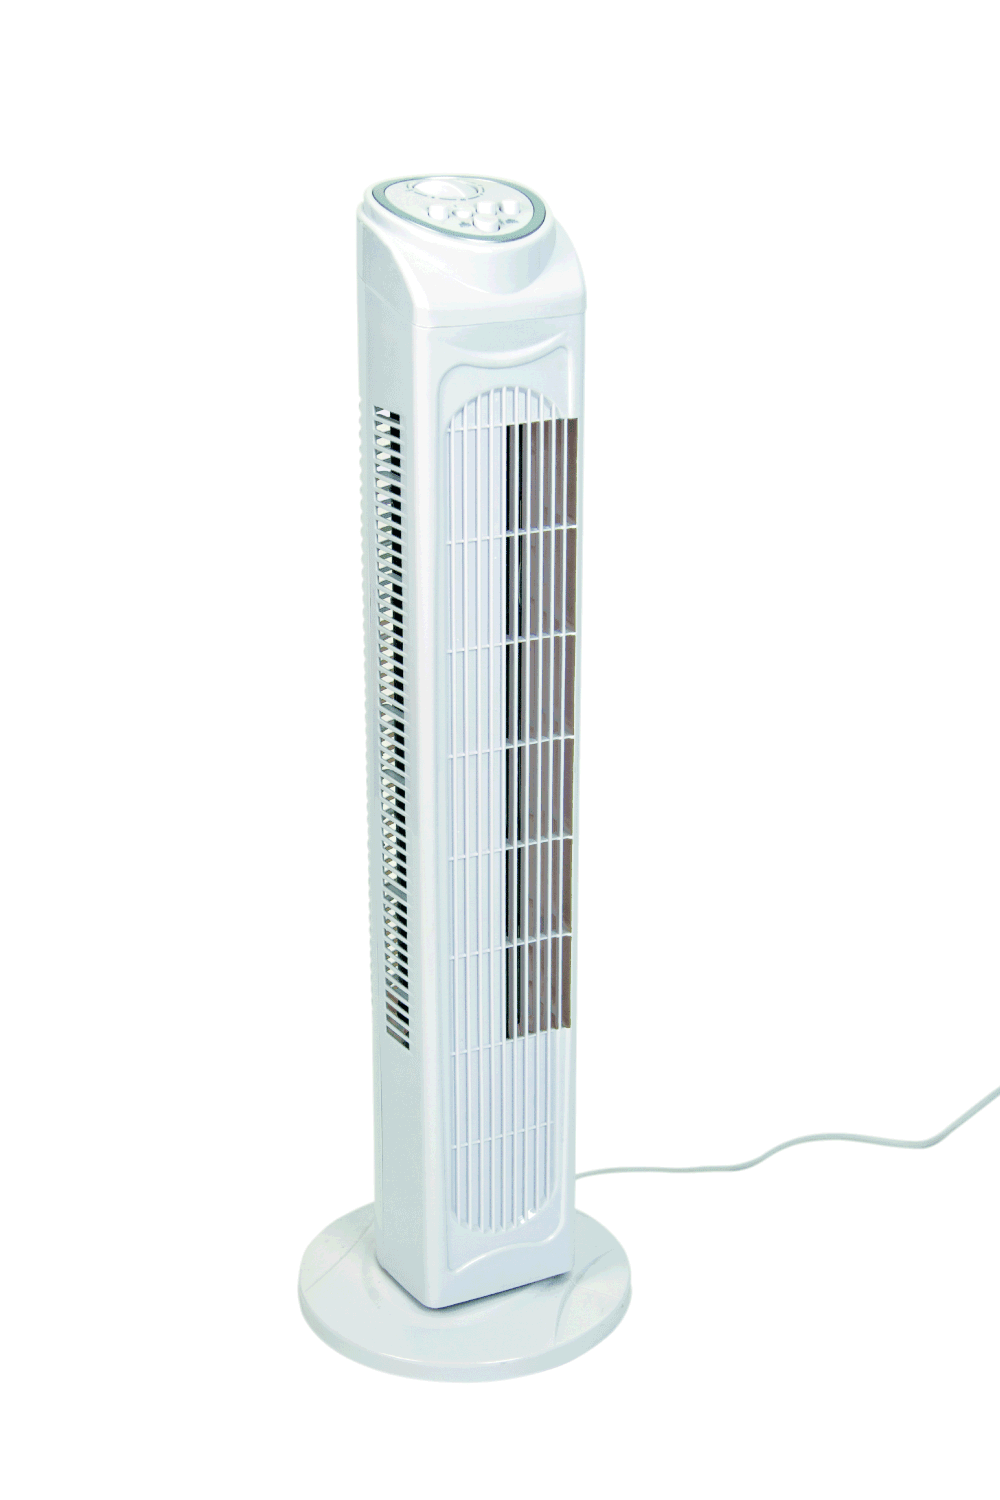 White Ventilator isolated on white background